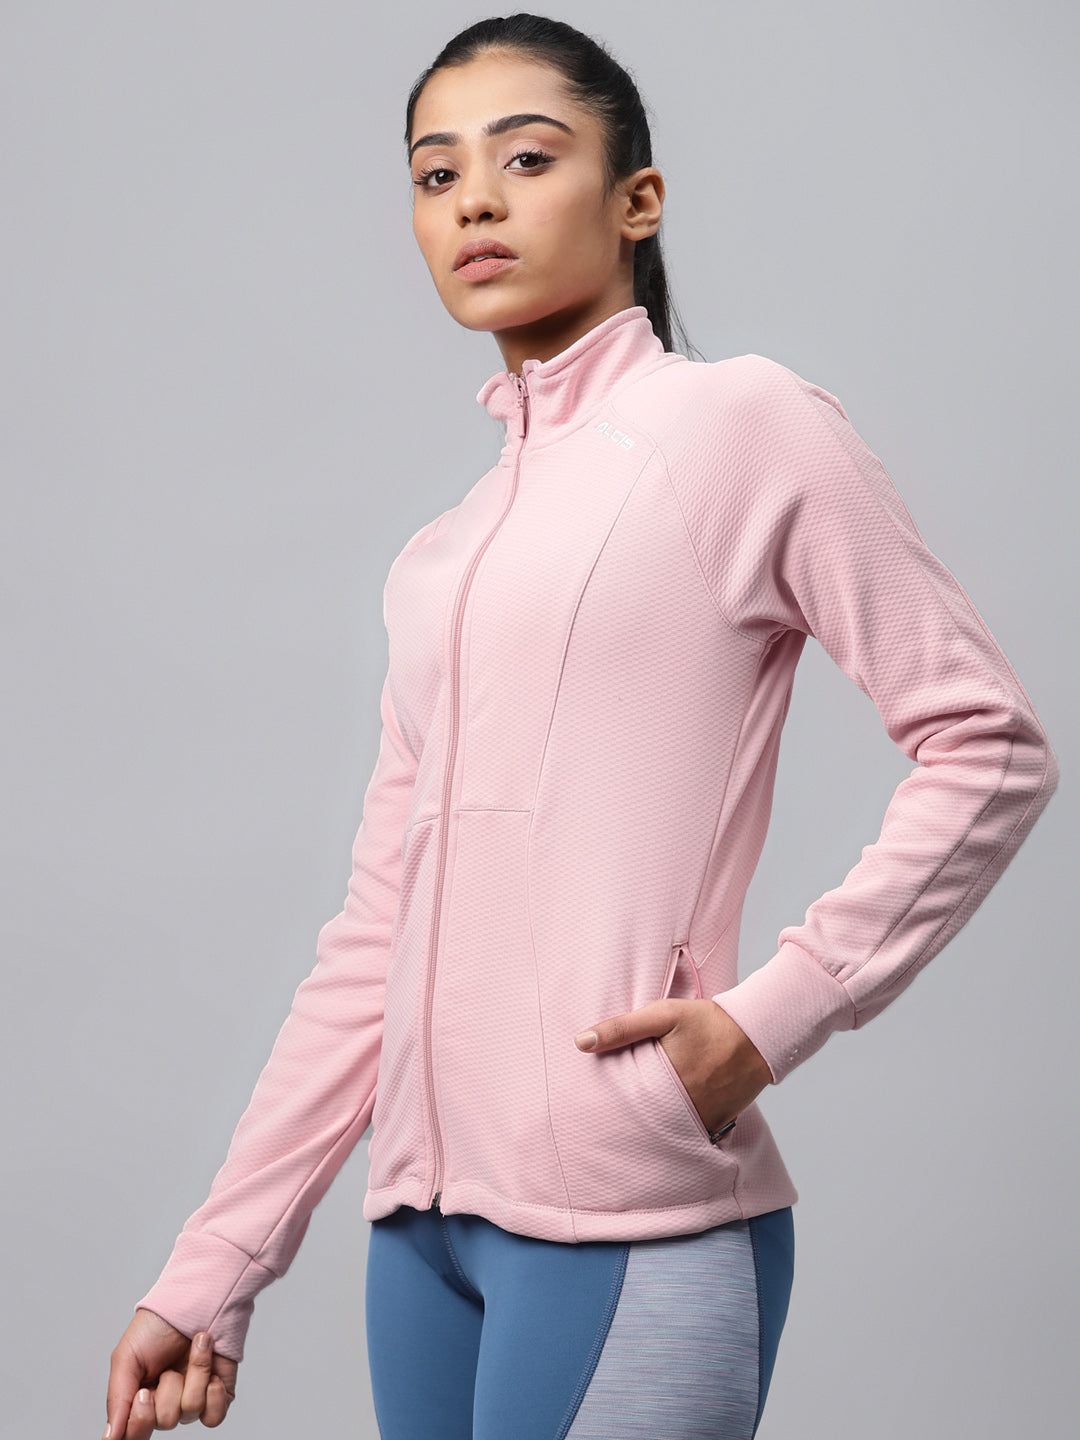 Alcis Women Pink Textured Sweatshirt